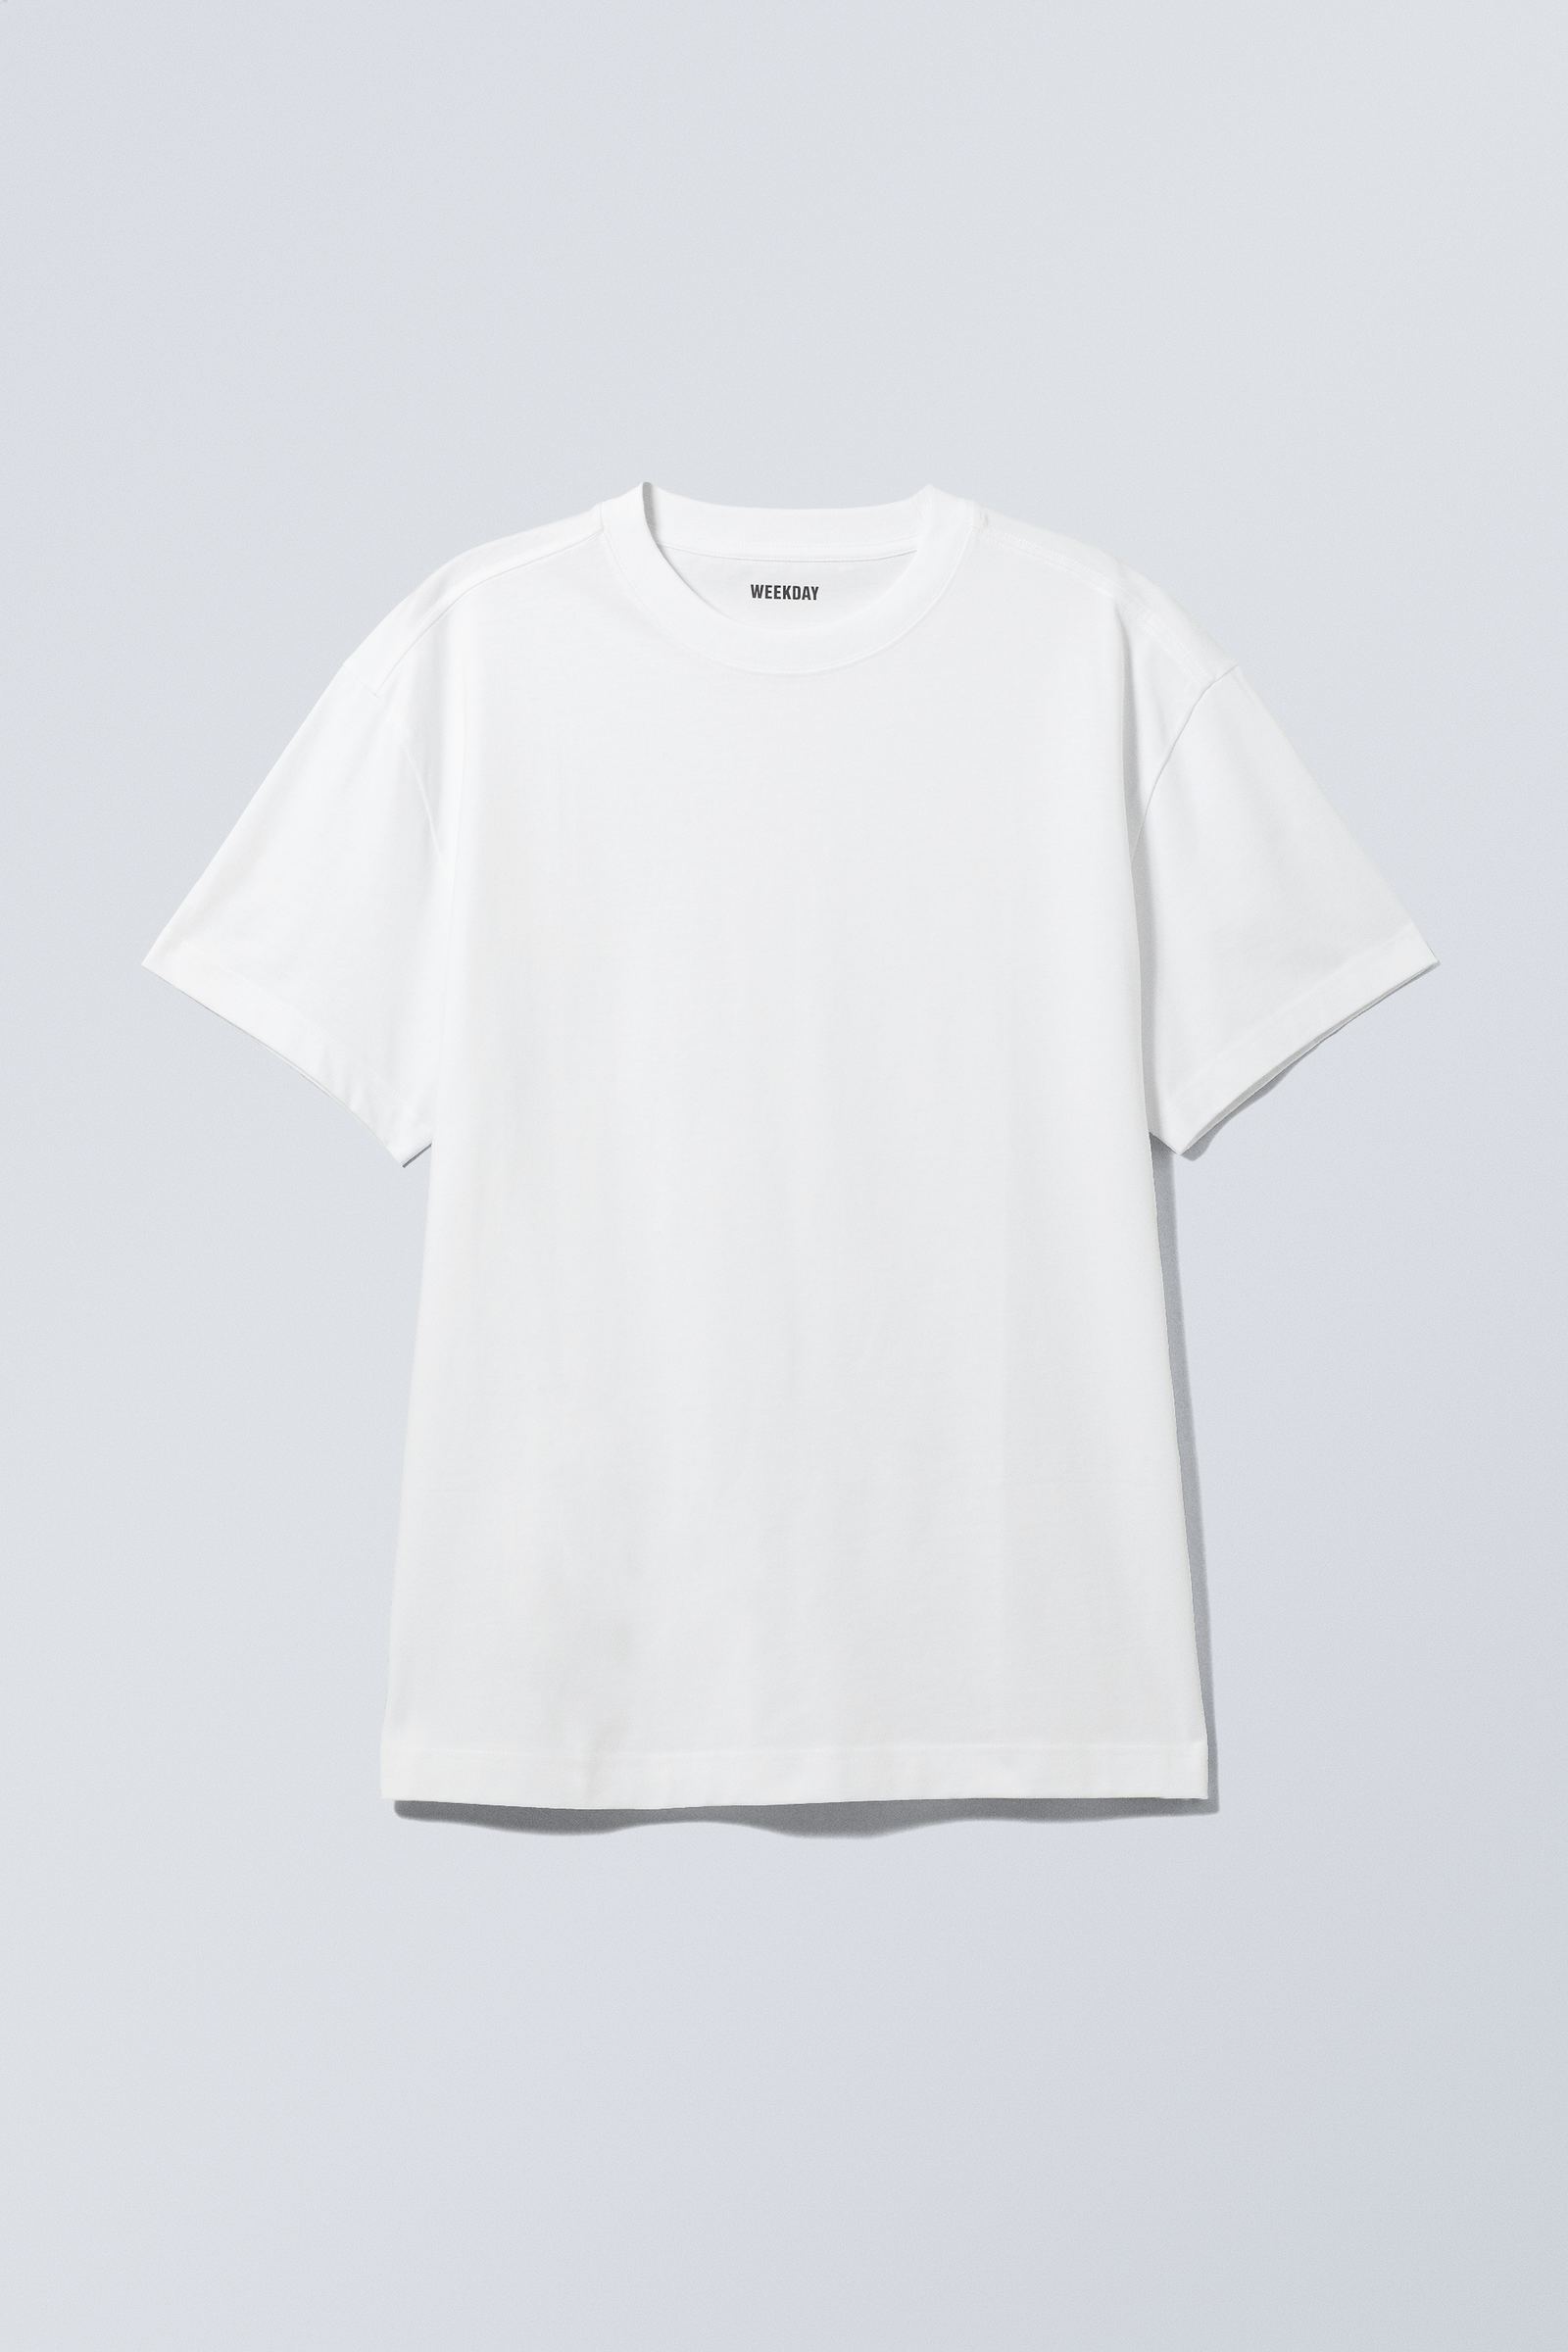 oversized heavyweight tshirt - White | Weekday DK